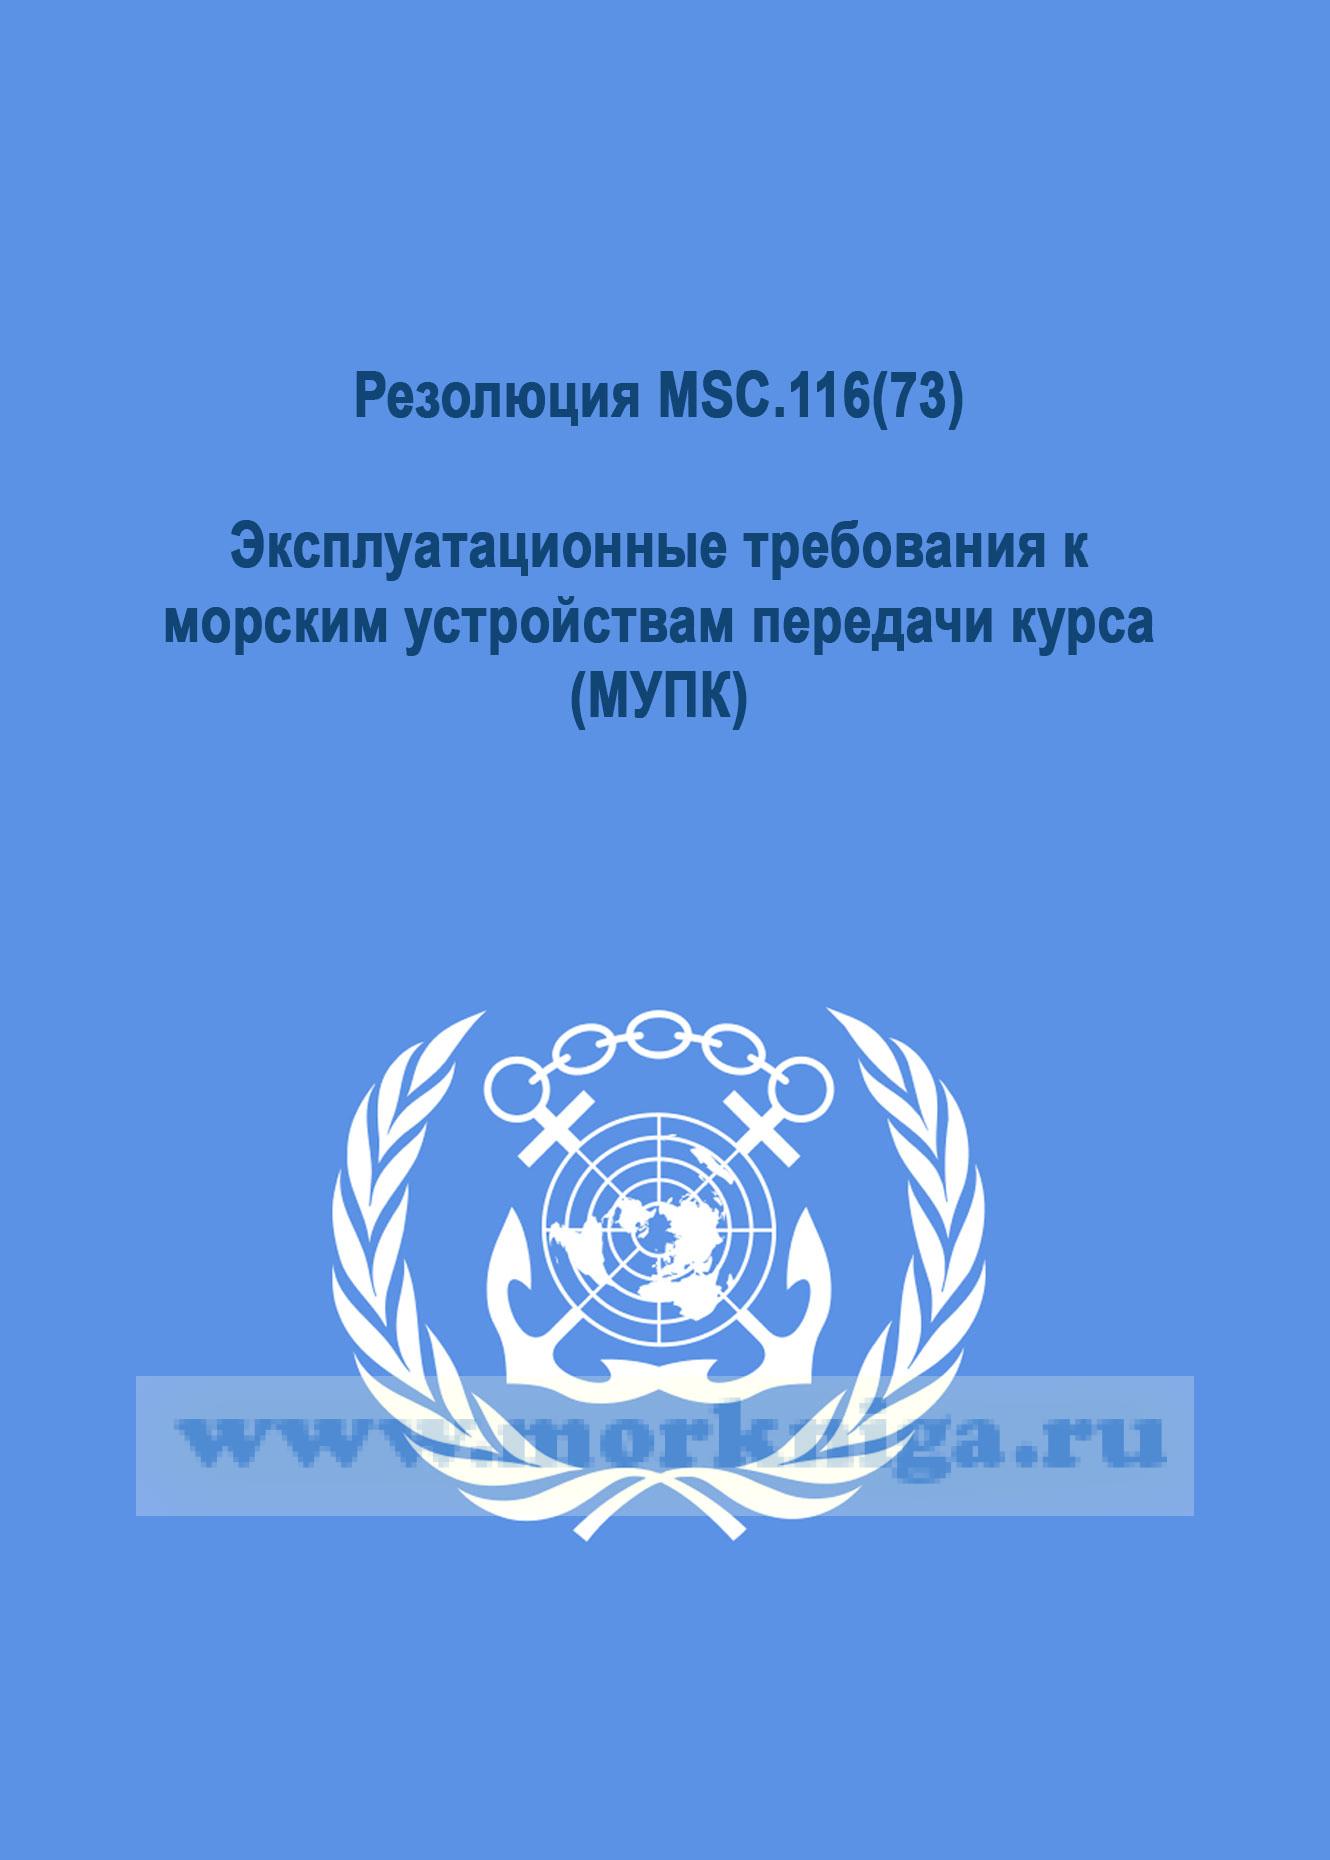 Резолюция MSC.116(73).Эксплуатационные требования к морским устройствам передачи курса (МУПК)